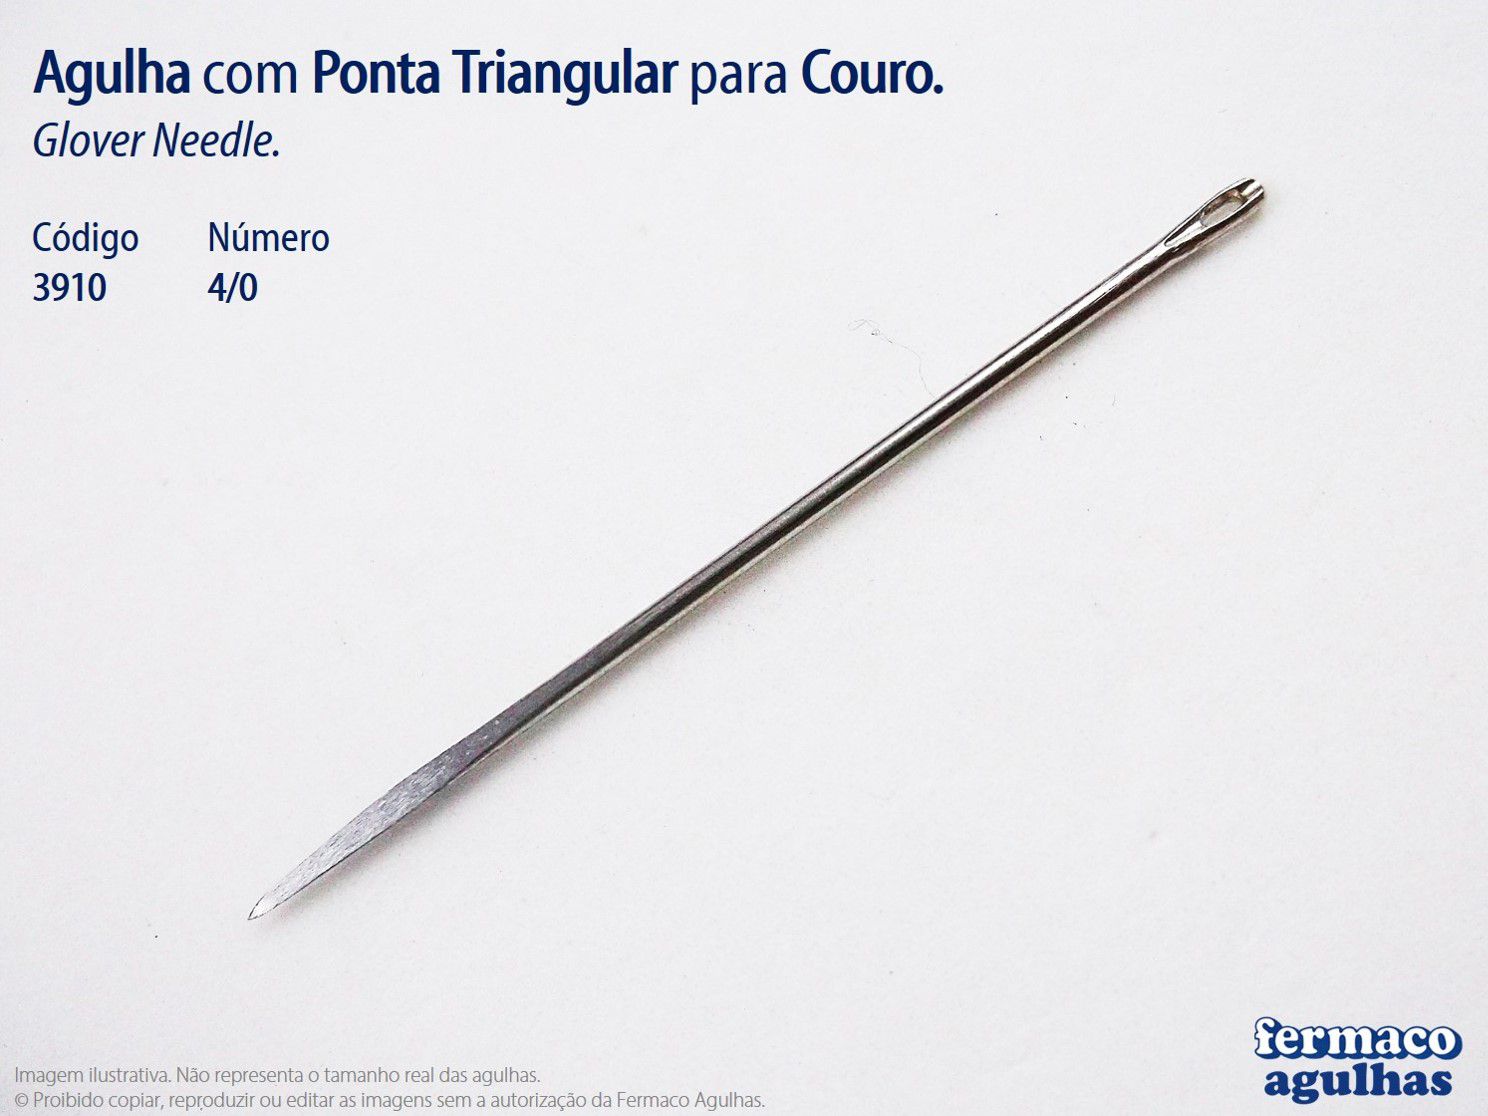 Agulha para Couro com Ponta Triangular número 4/0 (58mm x 1,30mm). Agulha Glover Needle 4/0.